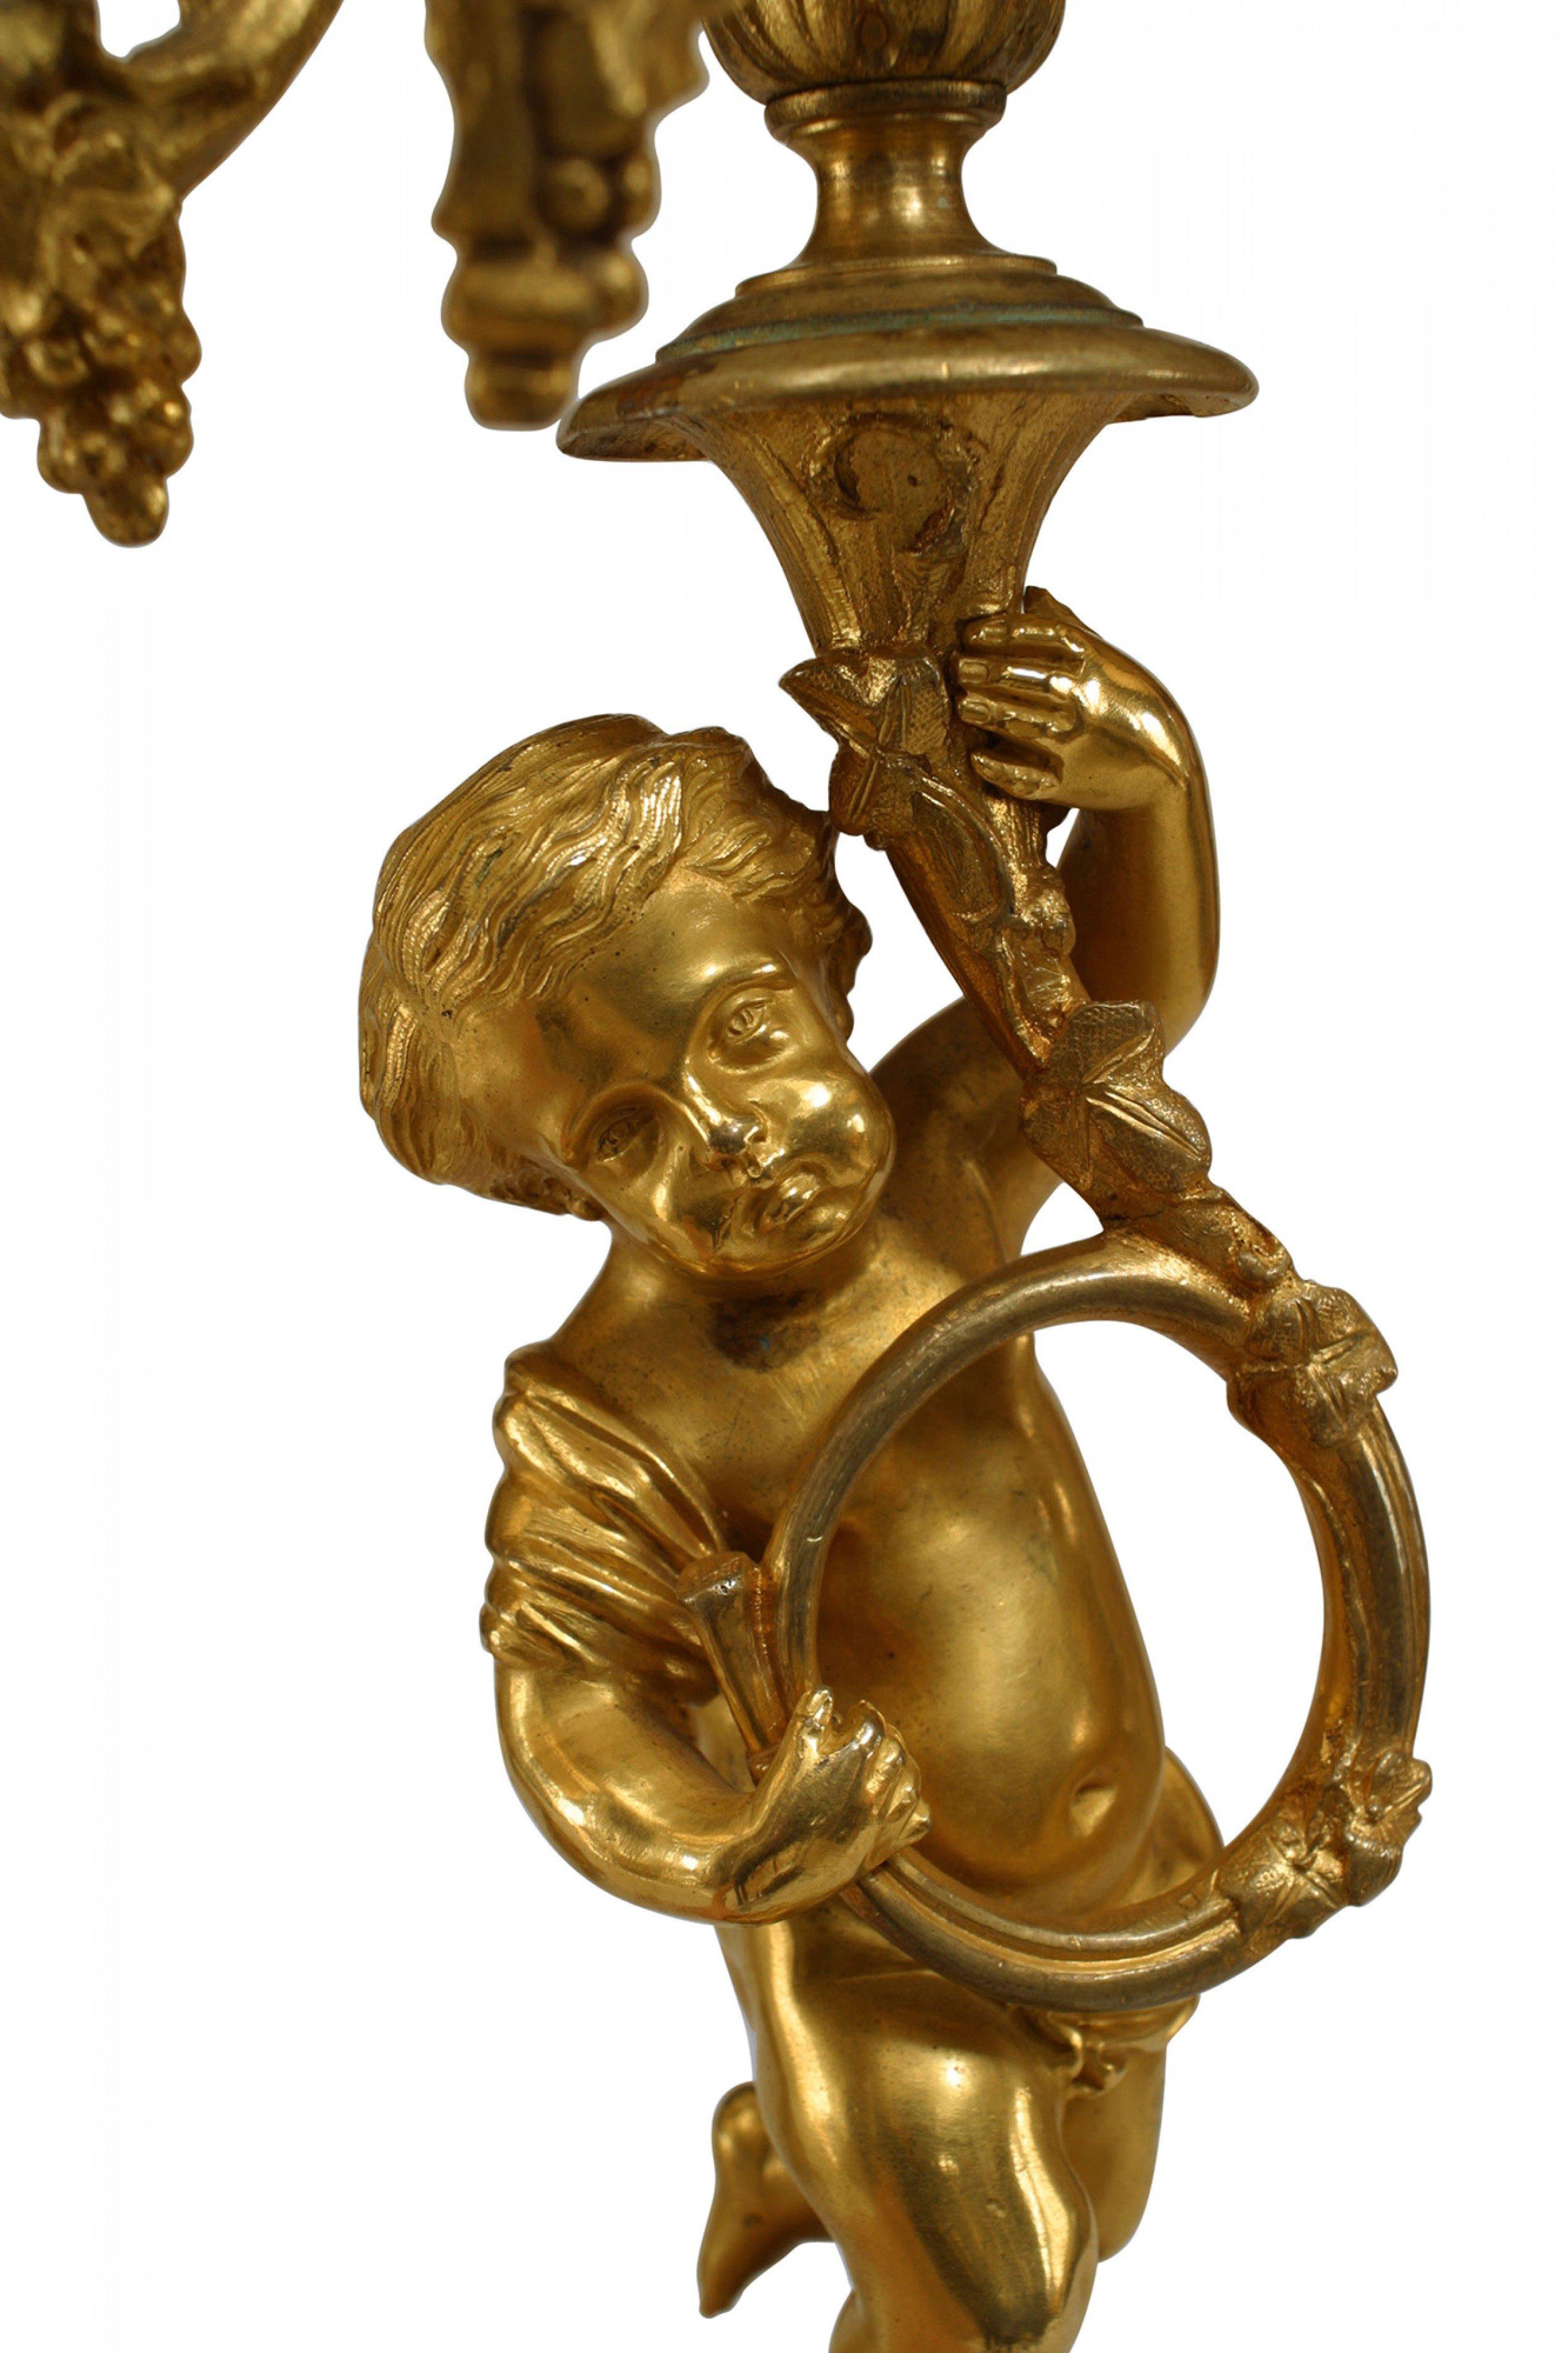 Pärchen französischer 5-armiger Bronzeleuchter im Louis XV-Stil (19. Jahrhundert) mit Amoretten, die Horninstrumente spielen (PREIS PRO PÄRCHEN)
 